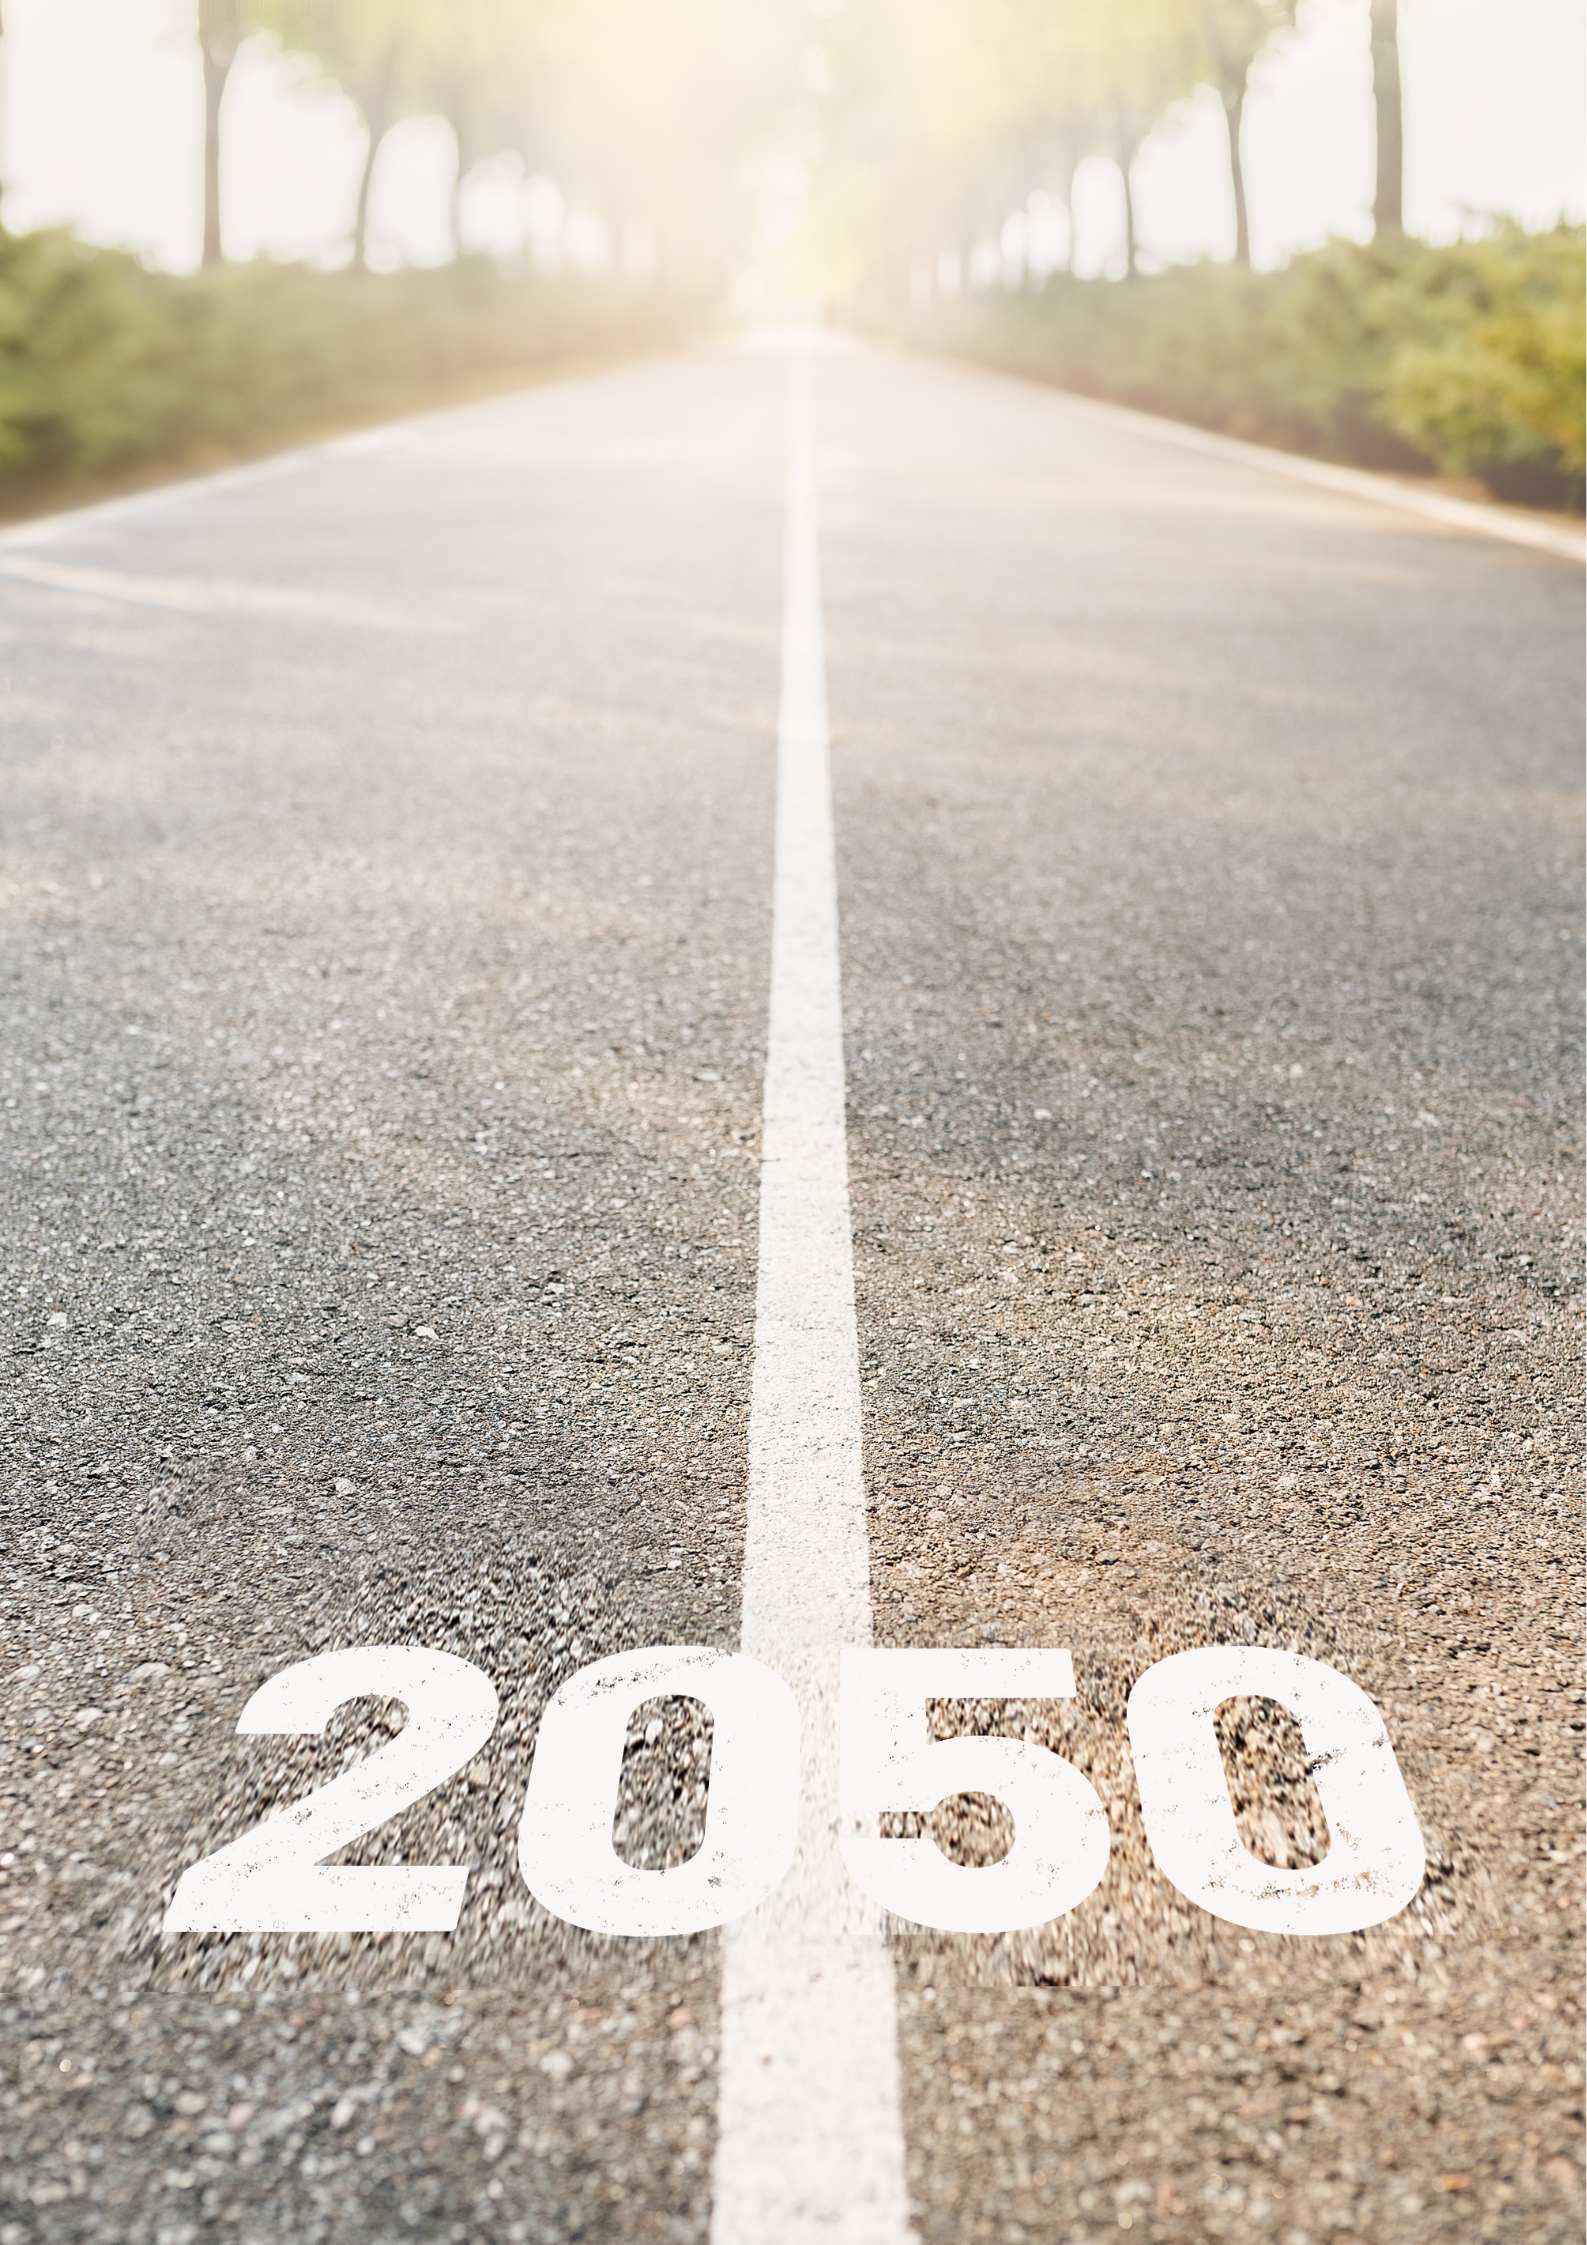 obiettivi neutralità climatica 2050